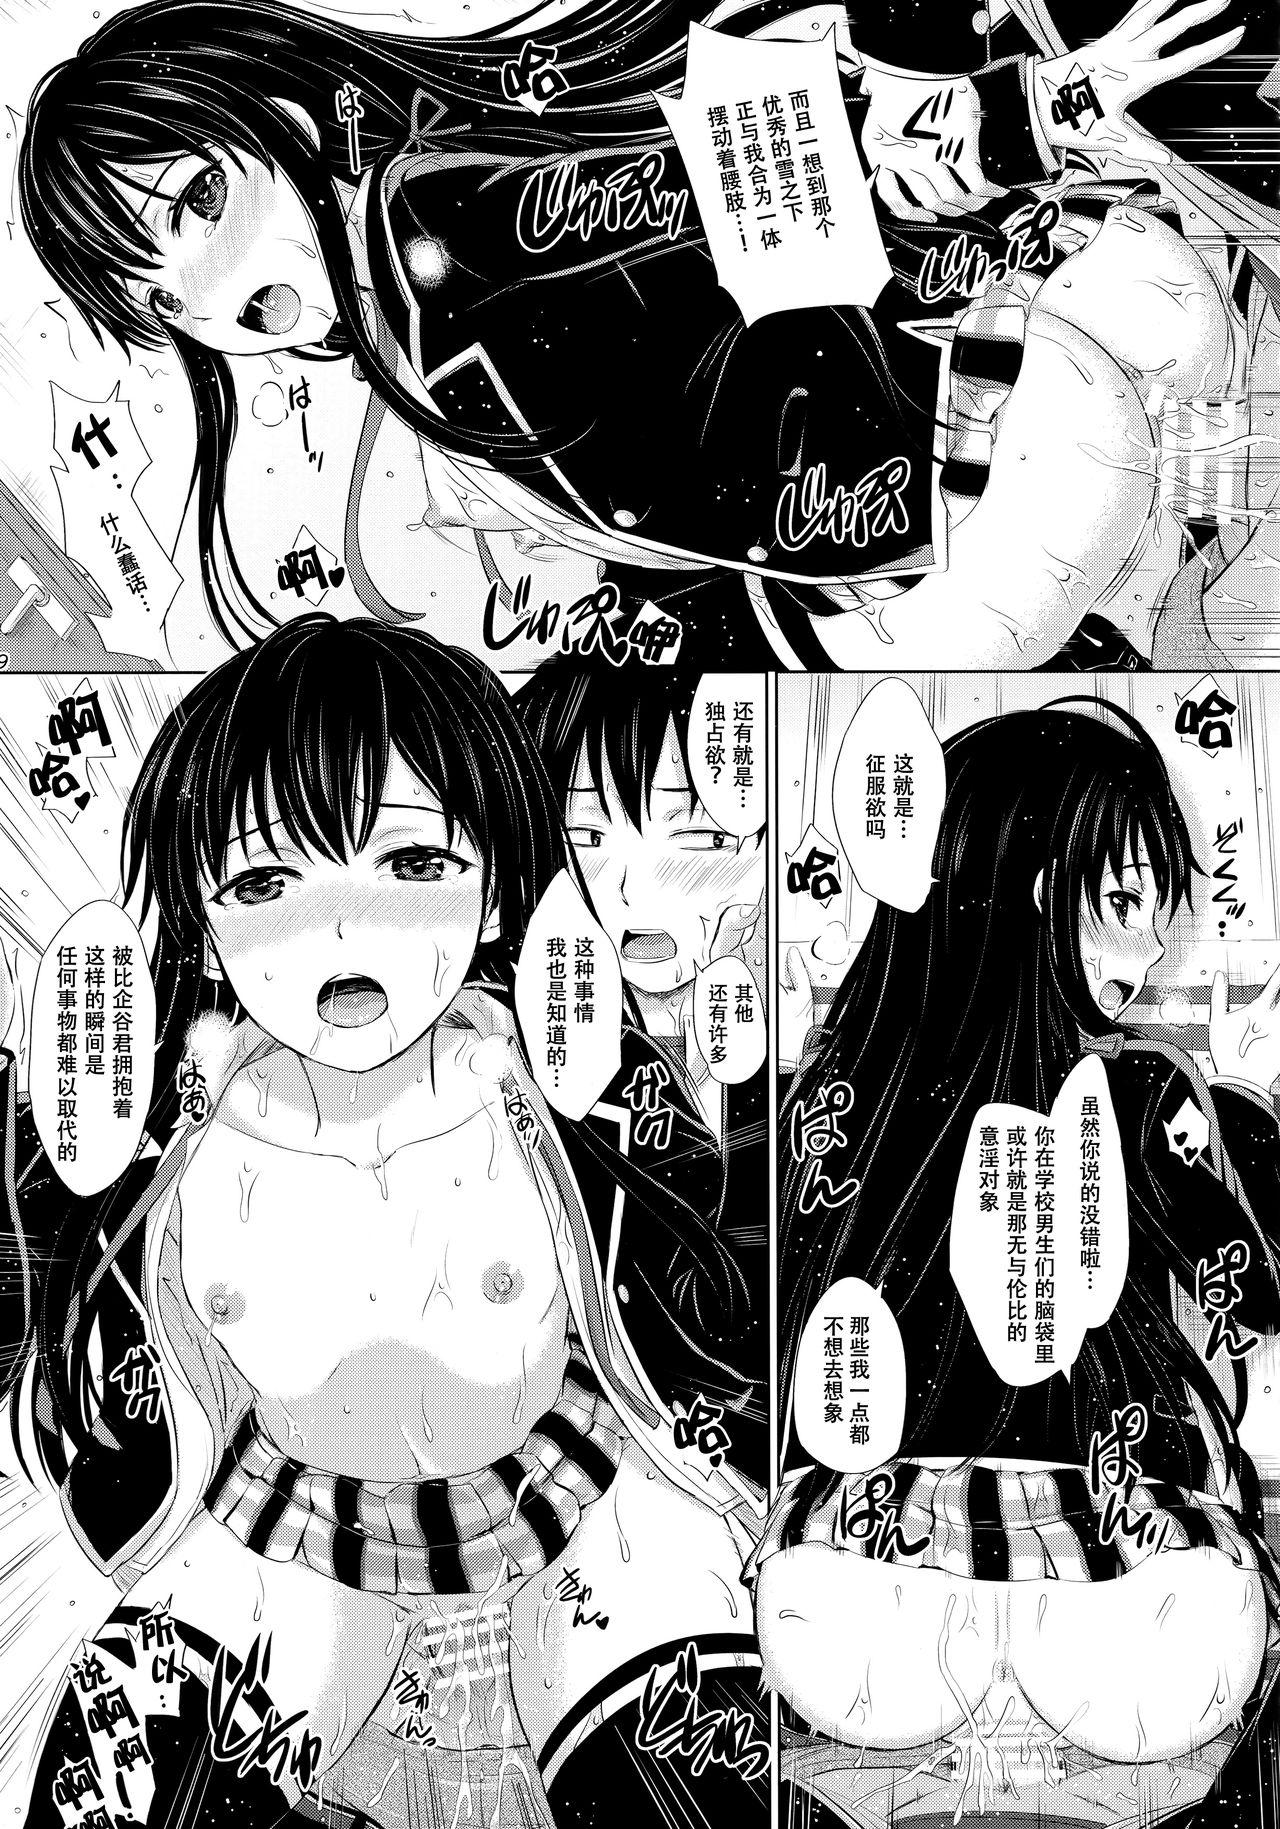 Newbie Sanrenkyuu wa Asa made Nama Yukinon. - Yahari ore no seishun love come wa machigatteiru Ex Girlfriend - Page 9